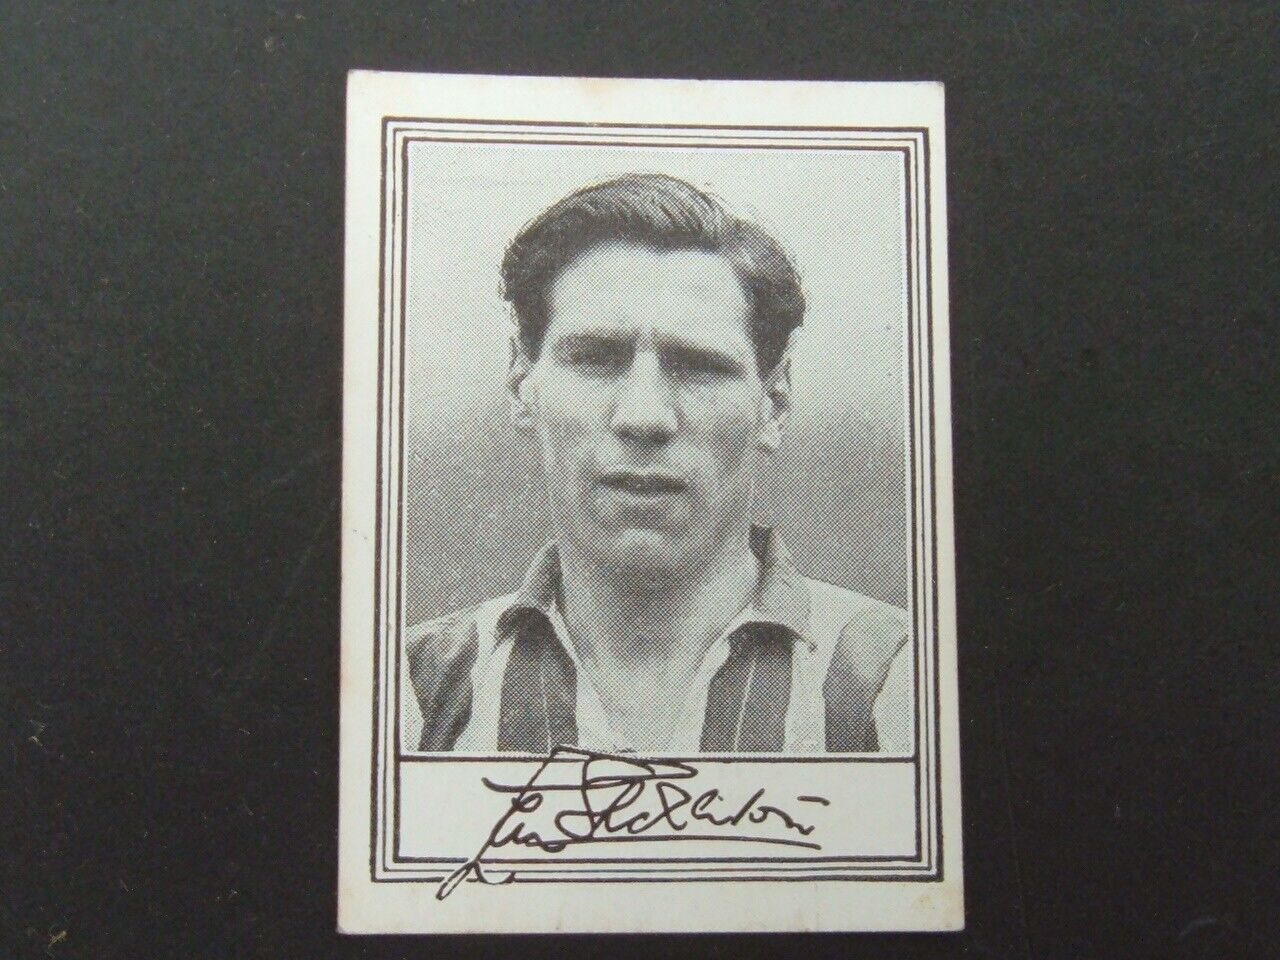 Barratt Famous Footballers Series A.1 (1953)  - # 26 Len Shackleton - Sunderland